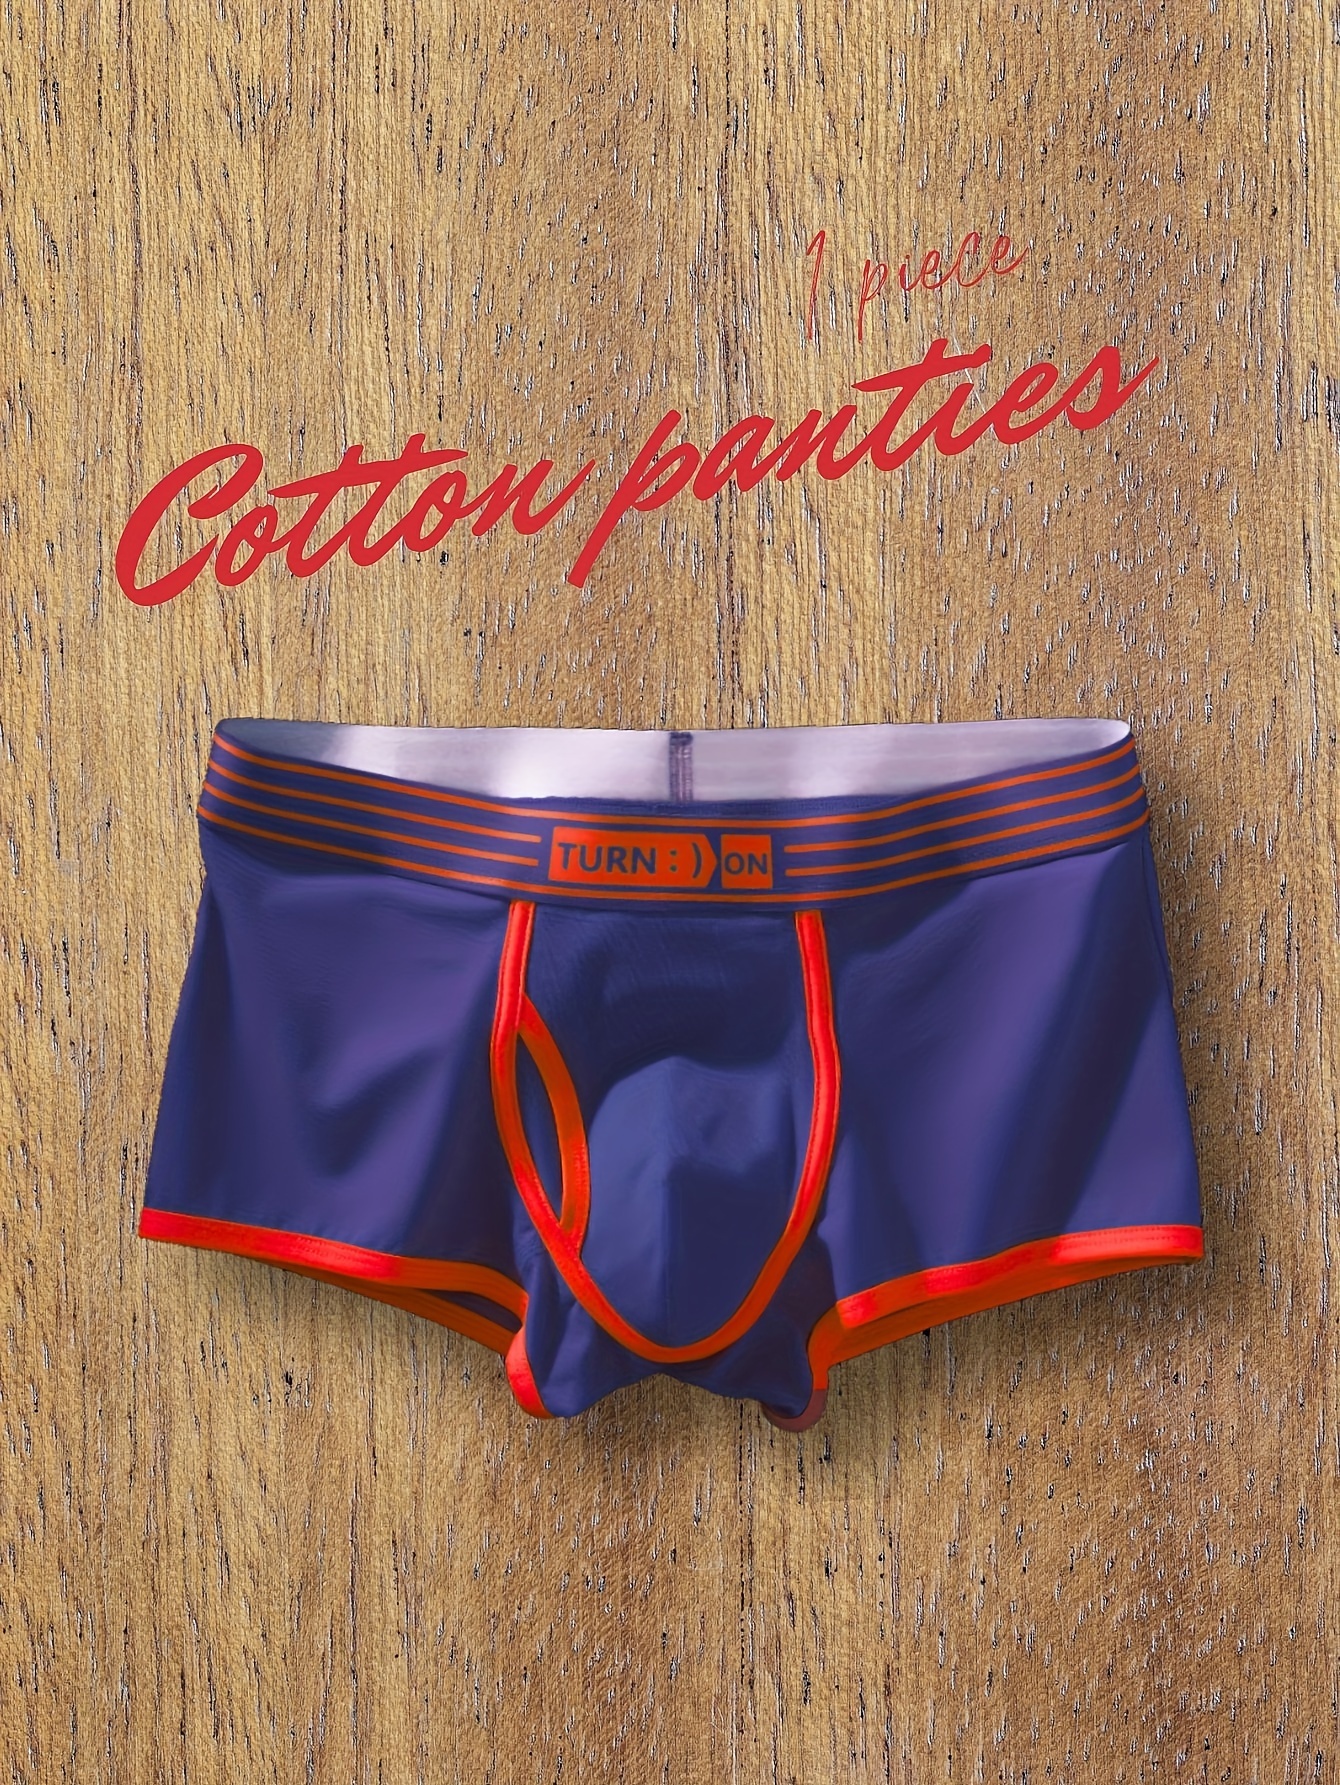 New Mens Low Rise Panties Underwear Boxer Shorts Trunks Briefs Underpants  Cotton